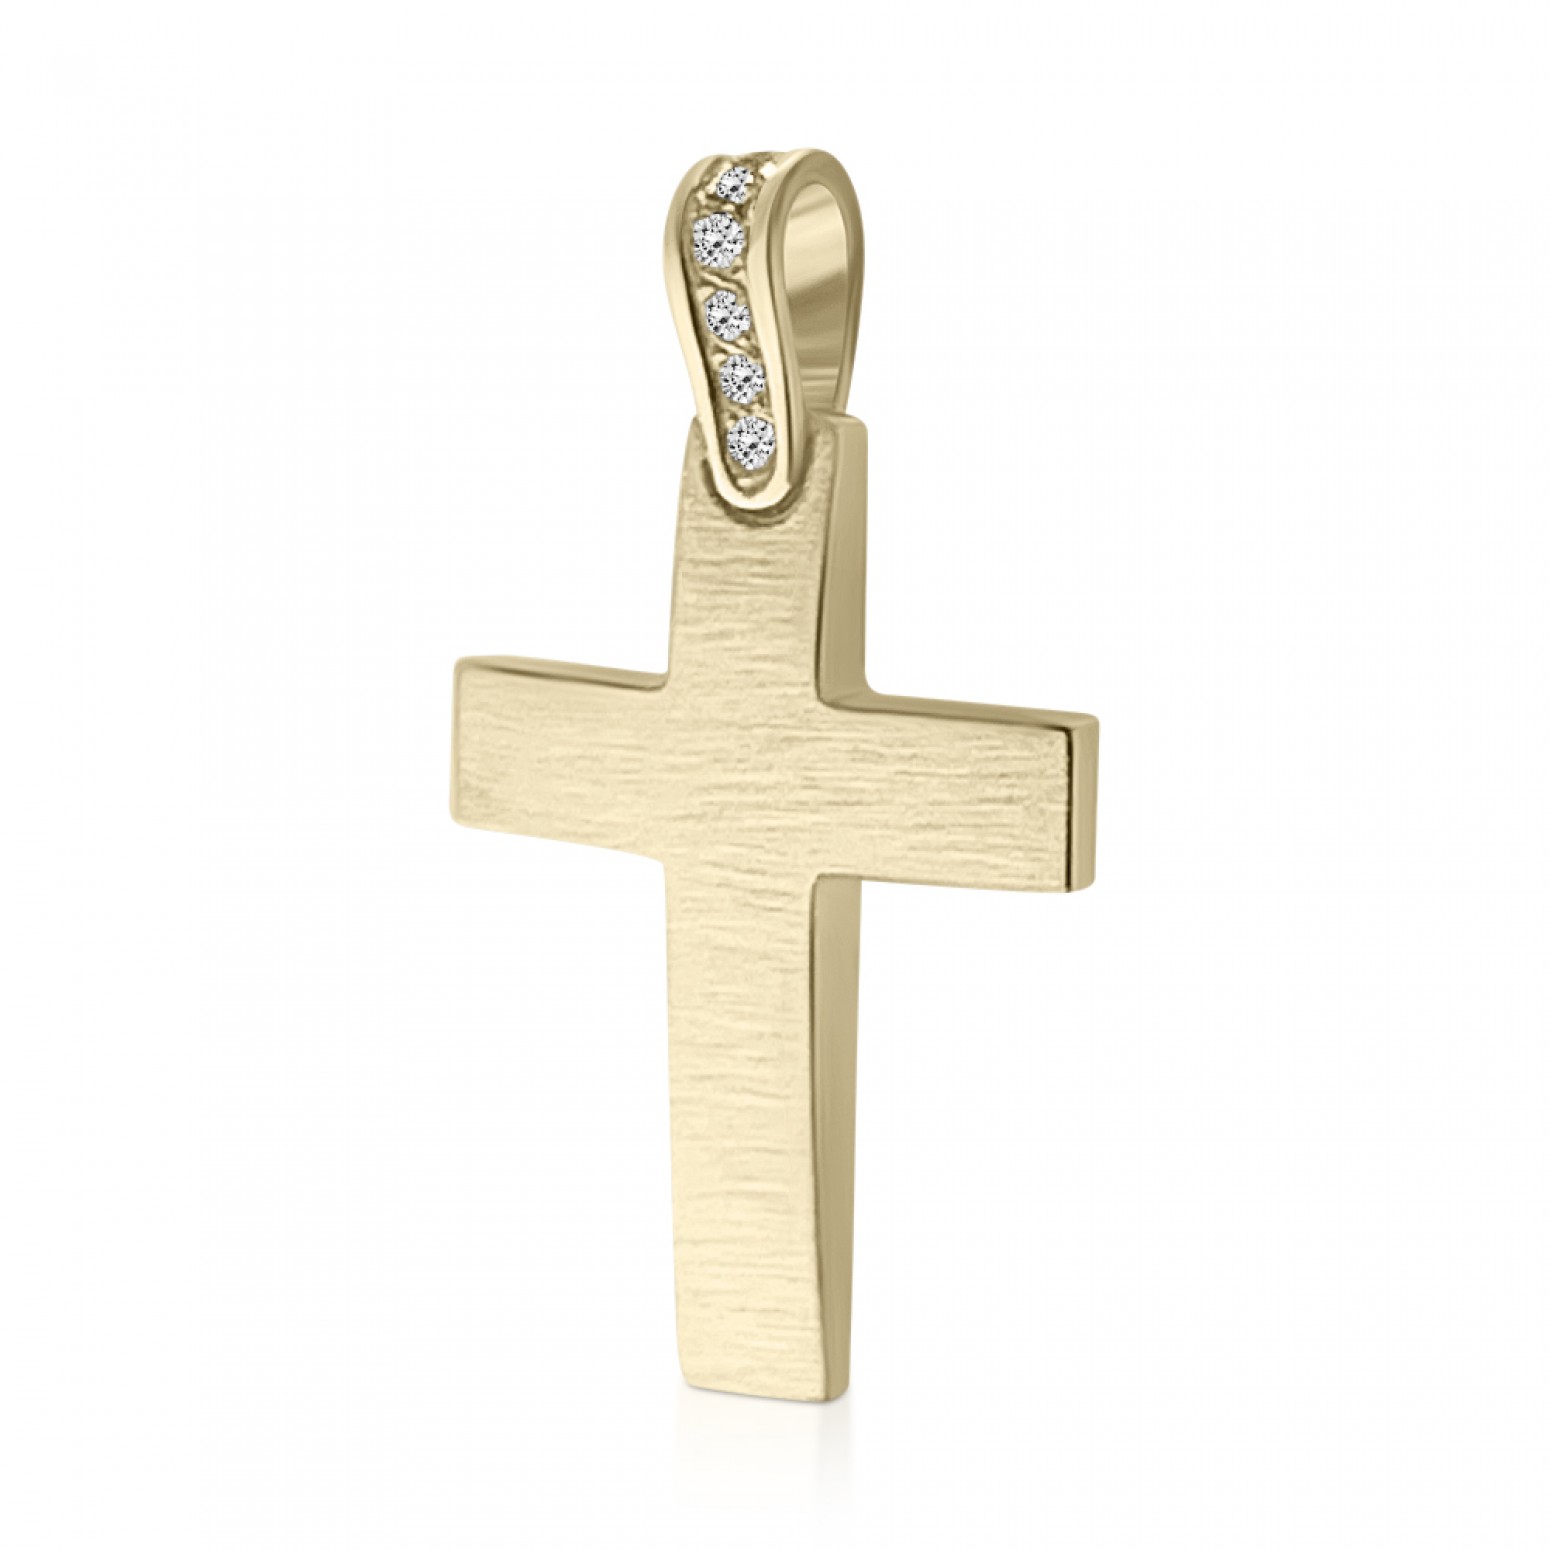 Βαπτιστικός σταυρός Κ14 χρυσό με ζιργκόν, st3890 ΣΤΑΥΡΟΙ Κοσμηματα - chrilia.gr